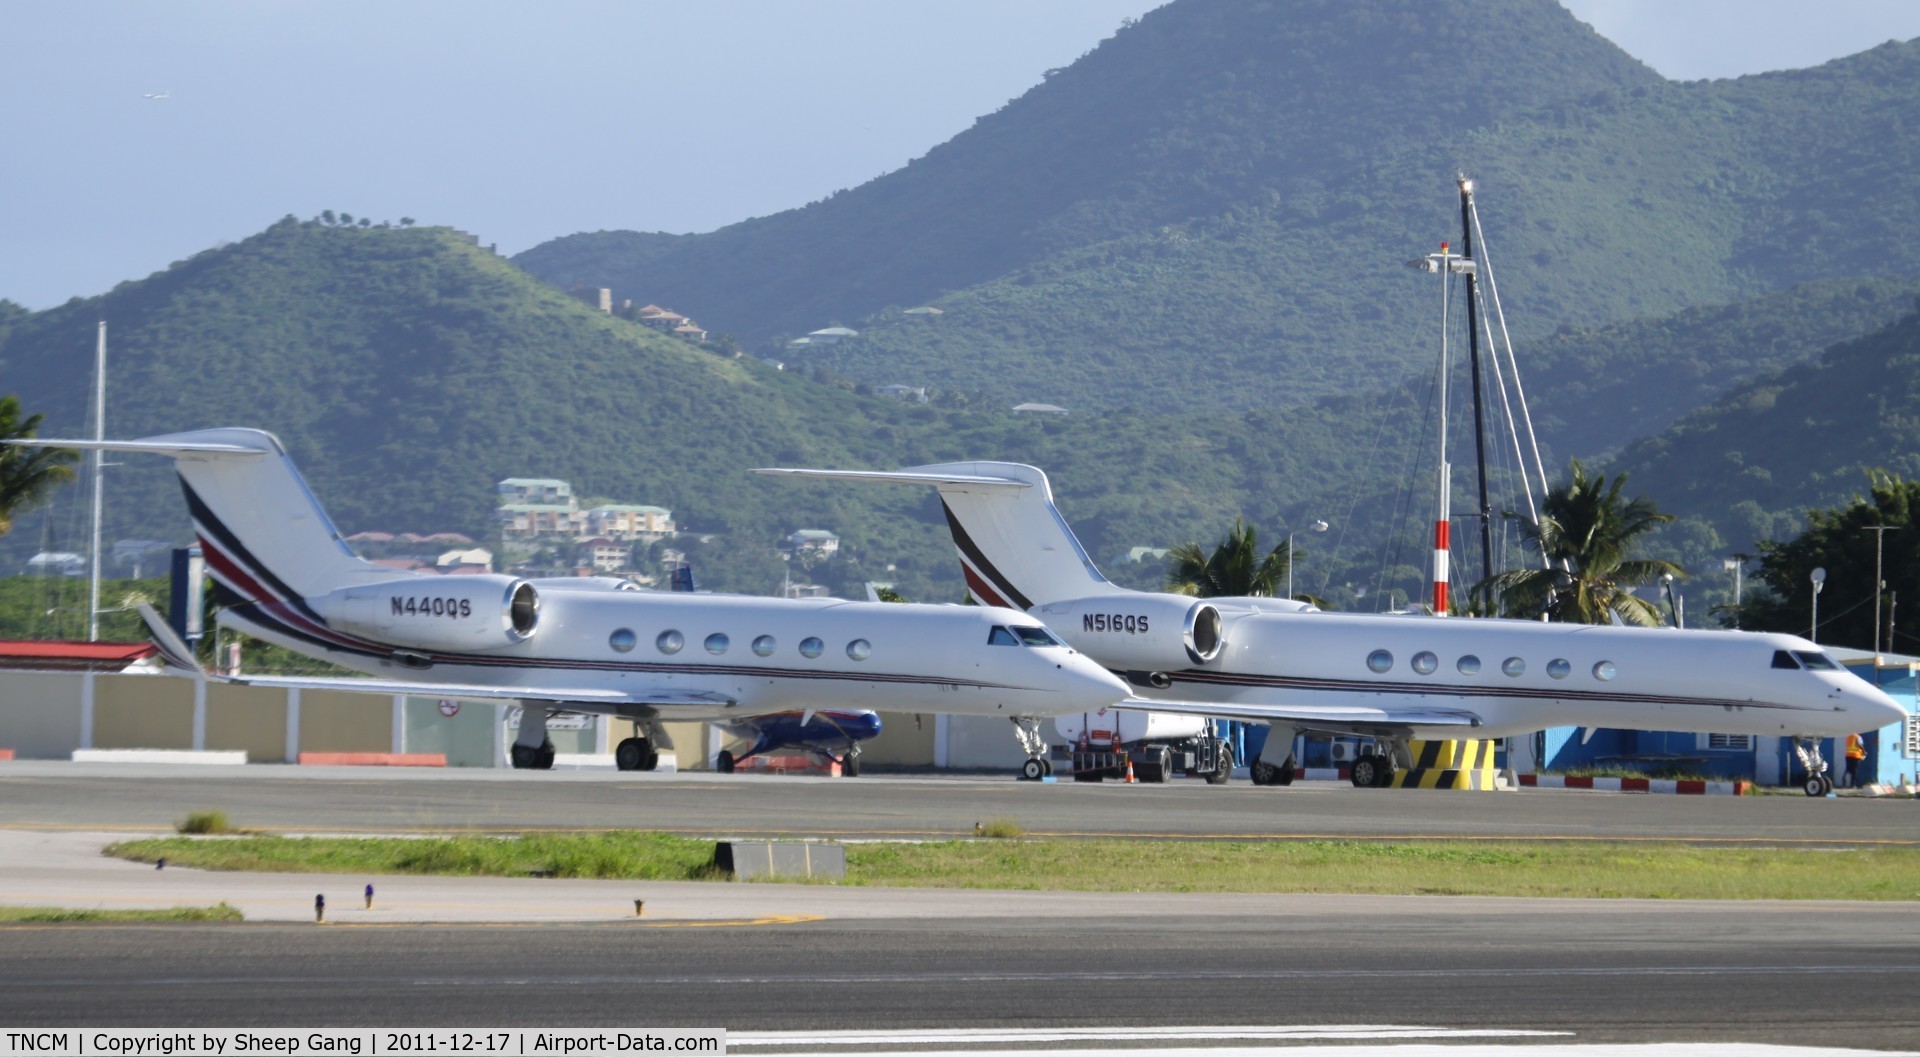 Princess Juliana International Airport, Philipsburg, Sint Maarten Netherlands Antilles (TNCM) - Charlie ramp at TNCM